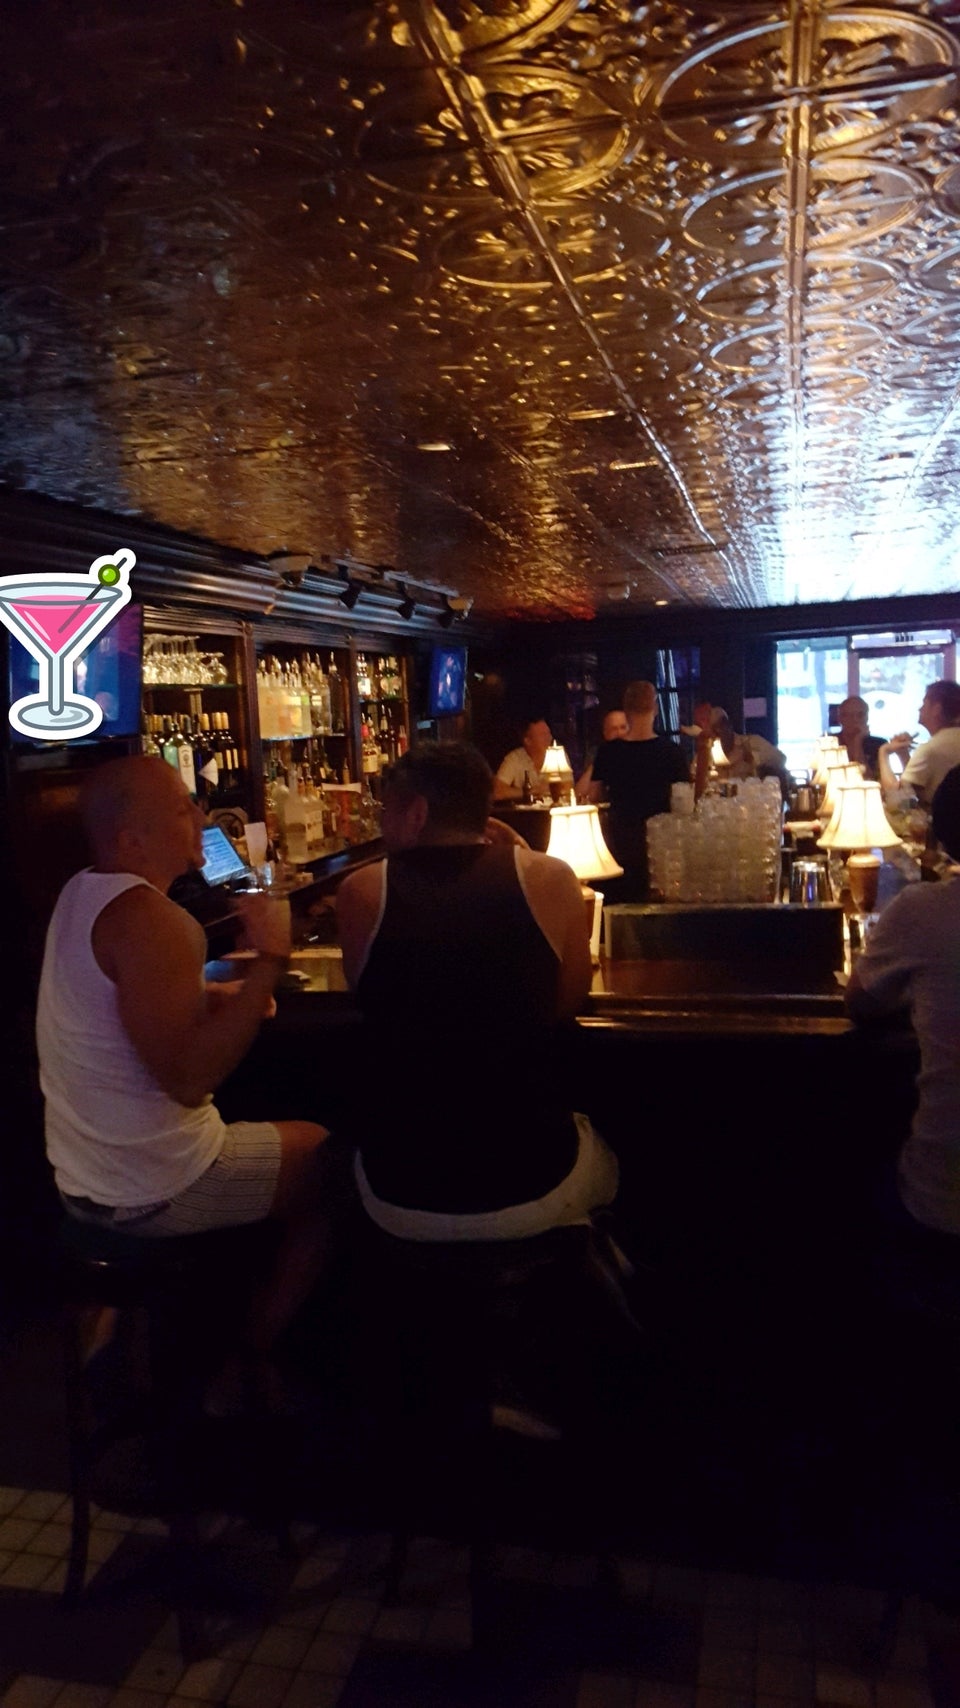 oldest gay bar in vegas history of gay bars in las vegas